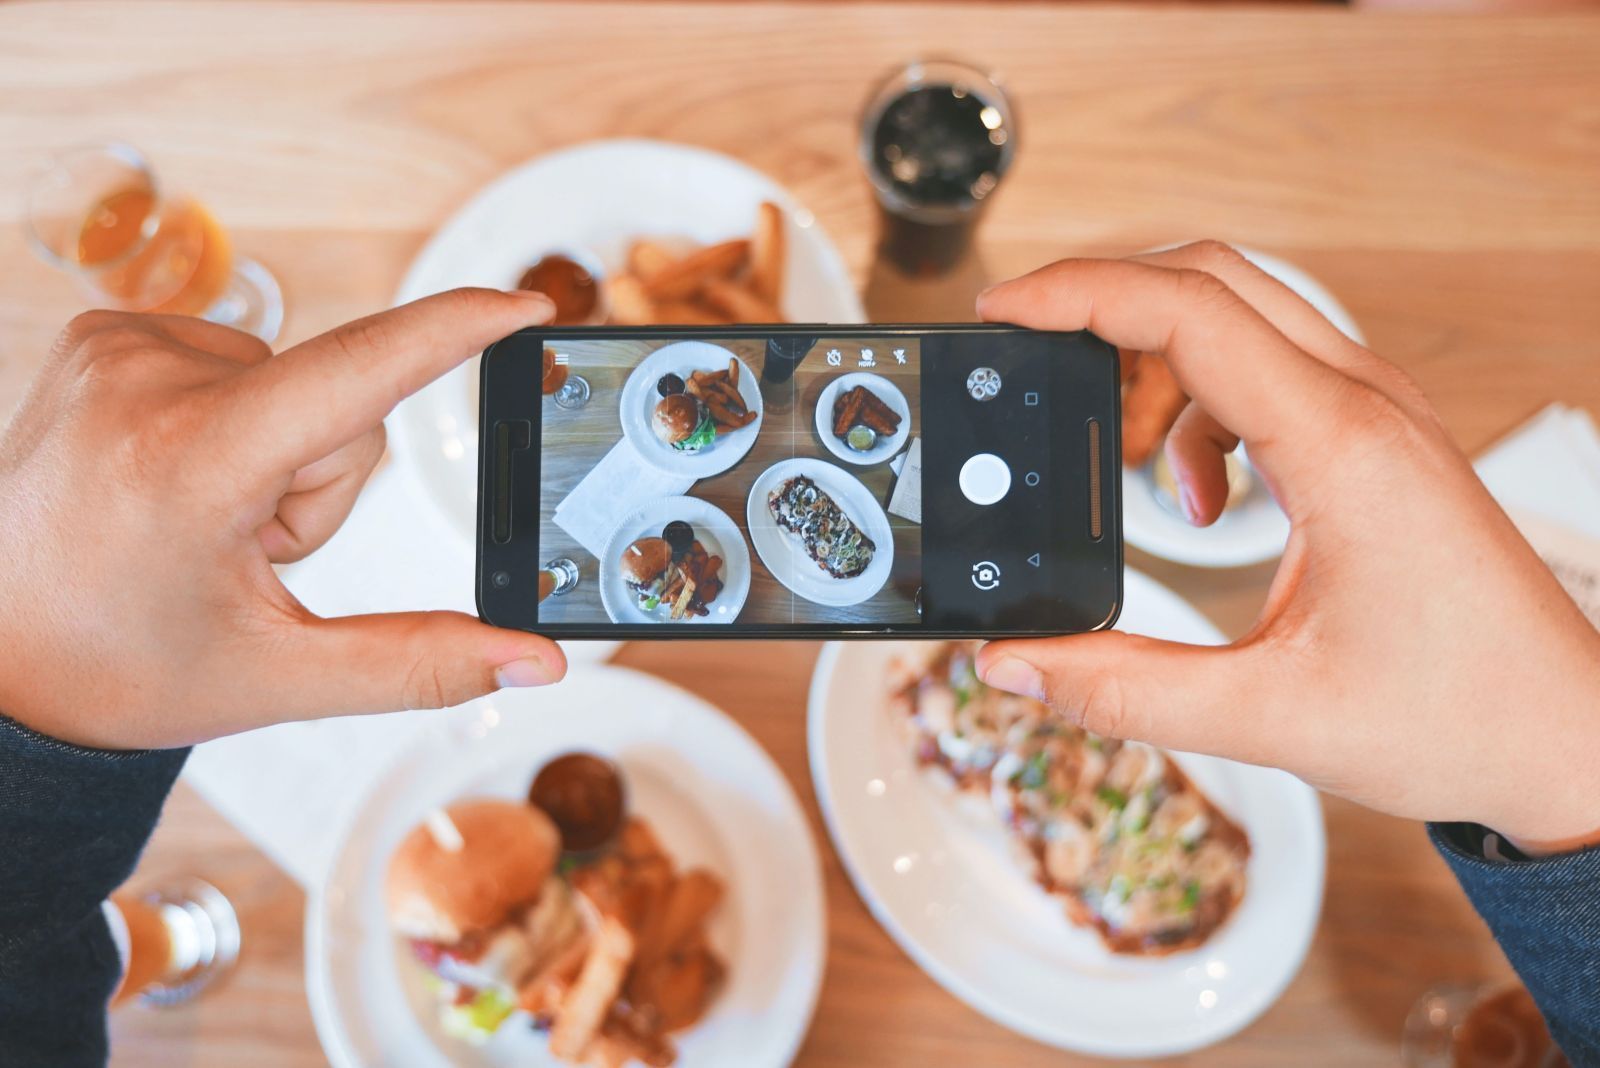 Una persona está tomando una fotografía de comida con un teléfono celular.